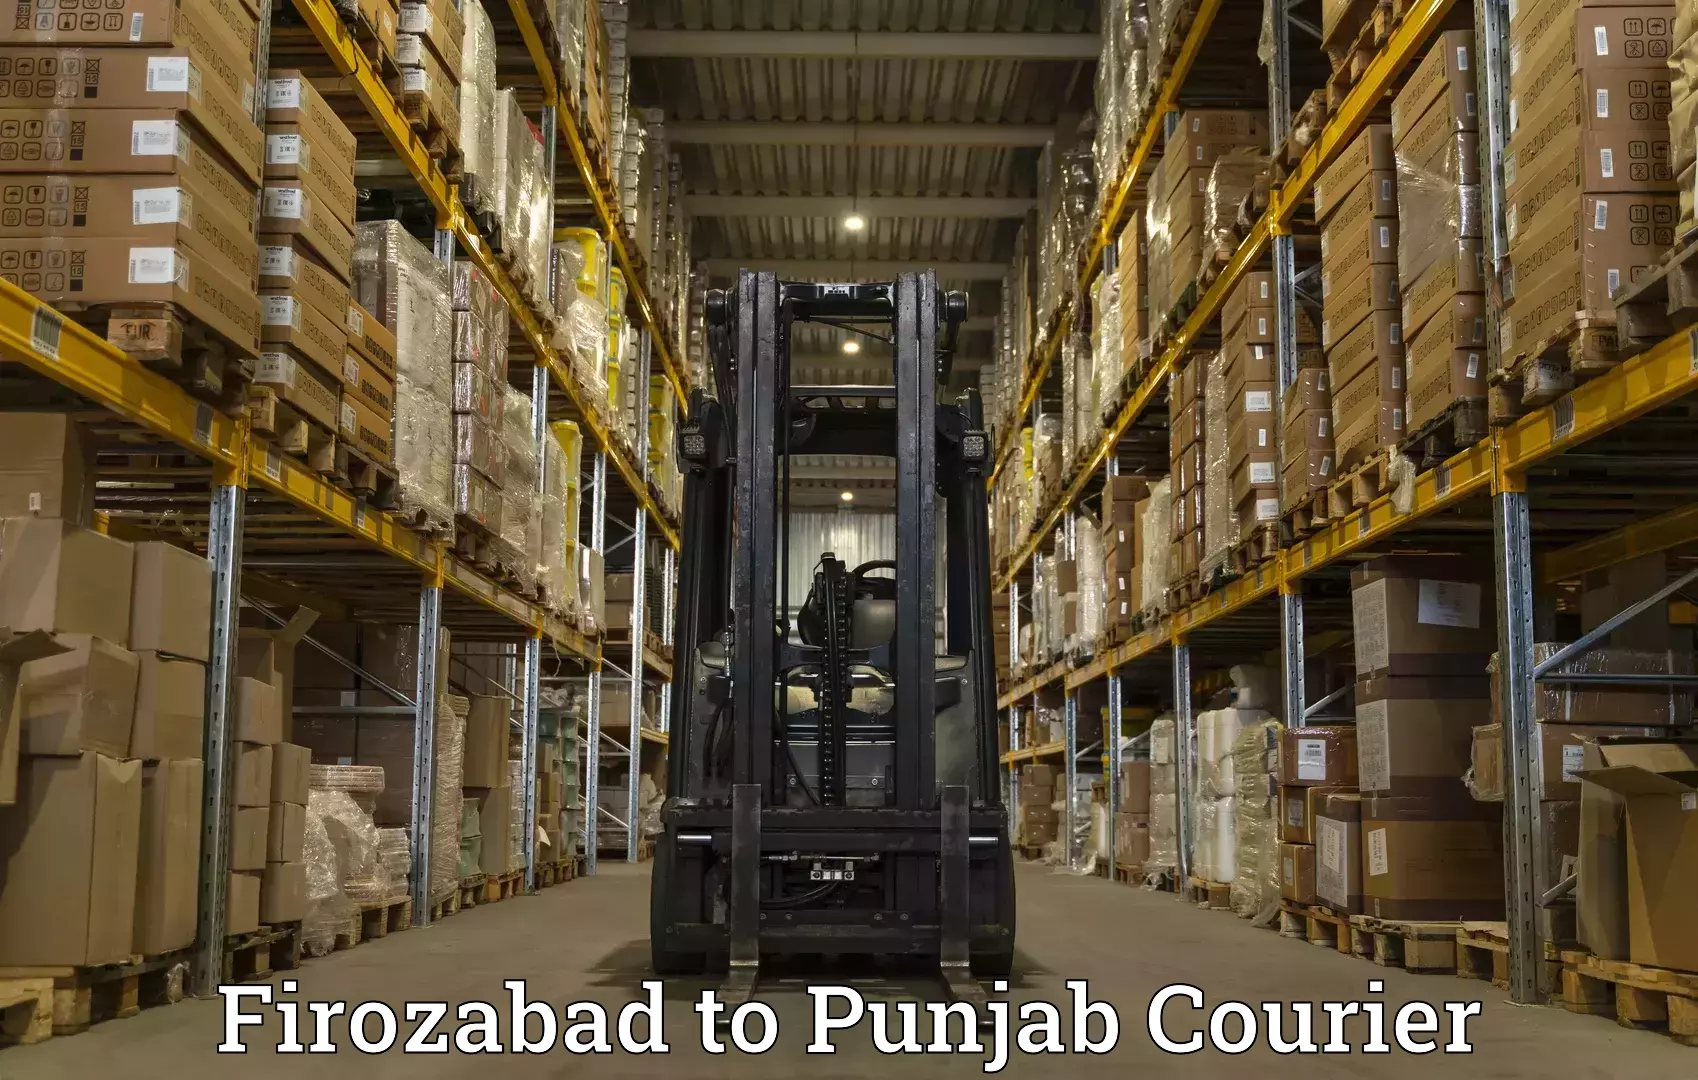 Business shipping needs Firozabad to Patti Tarn Tara